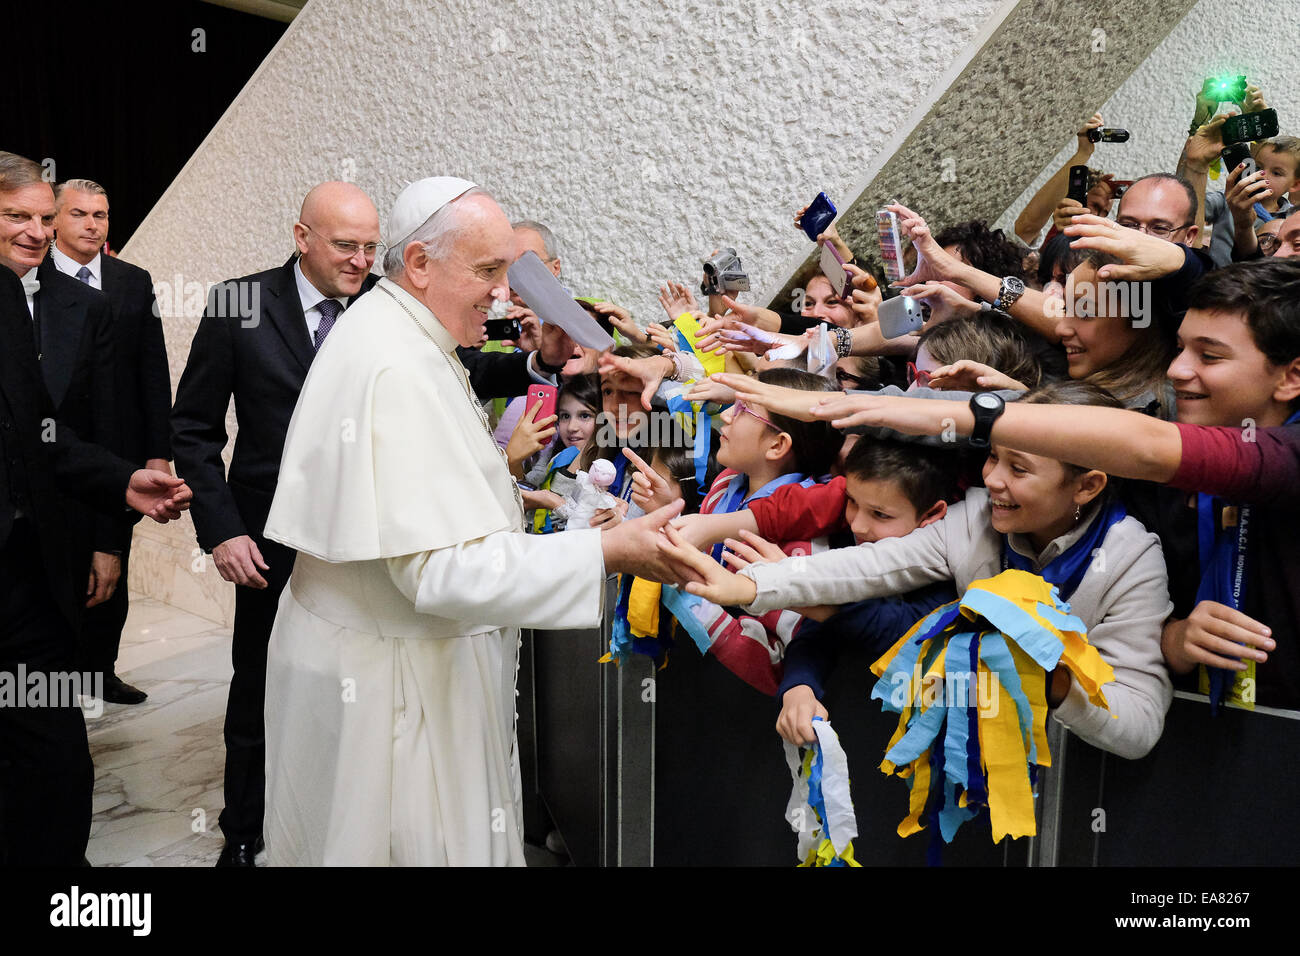 Aula Paolo VI, Vatikanstadt. 8. November 2014. Papst Francis Besprechungstermin mit der Bewegung der Italiener Erwachsene Scout Credit: wirklich Easy Star/Alamy Live News Stockfoto